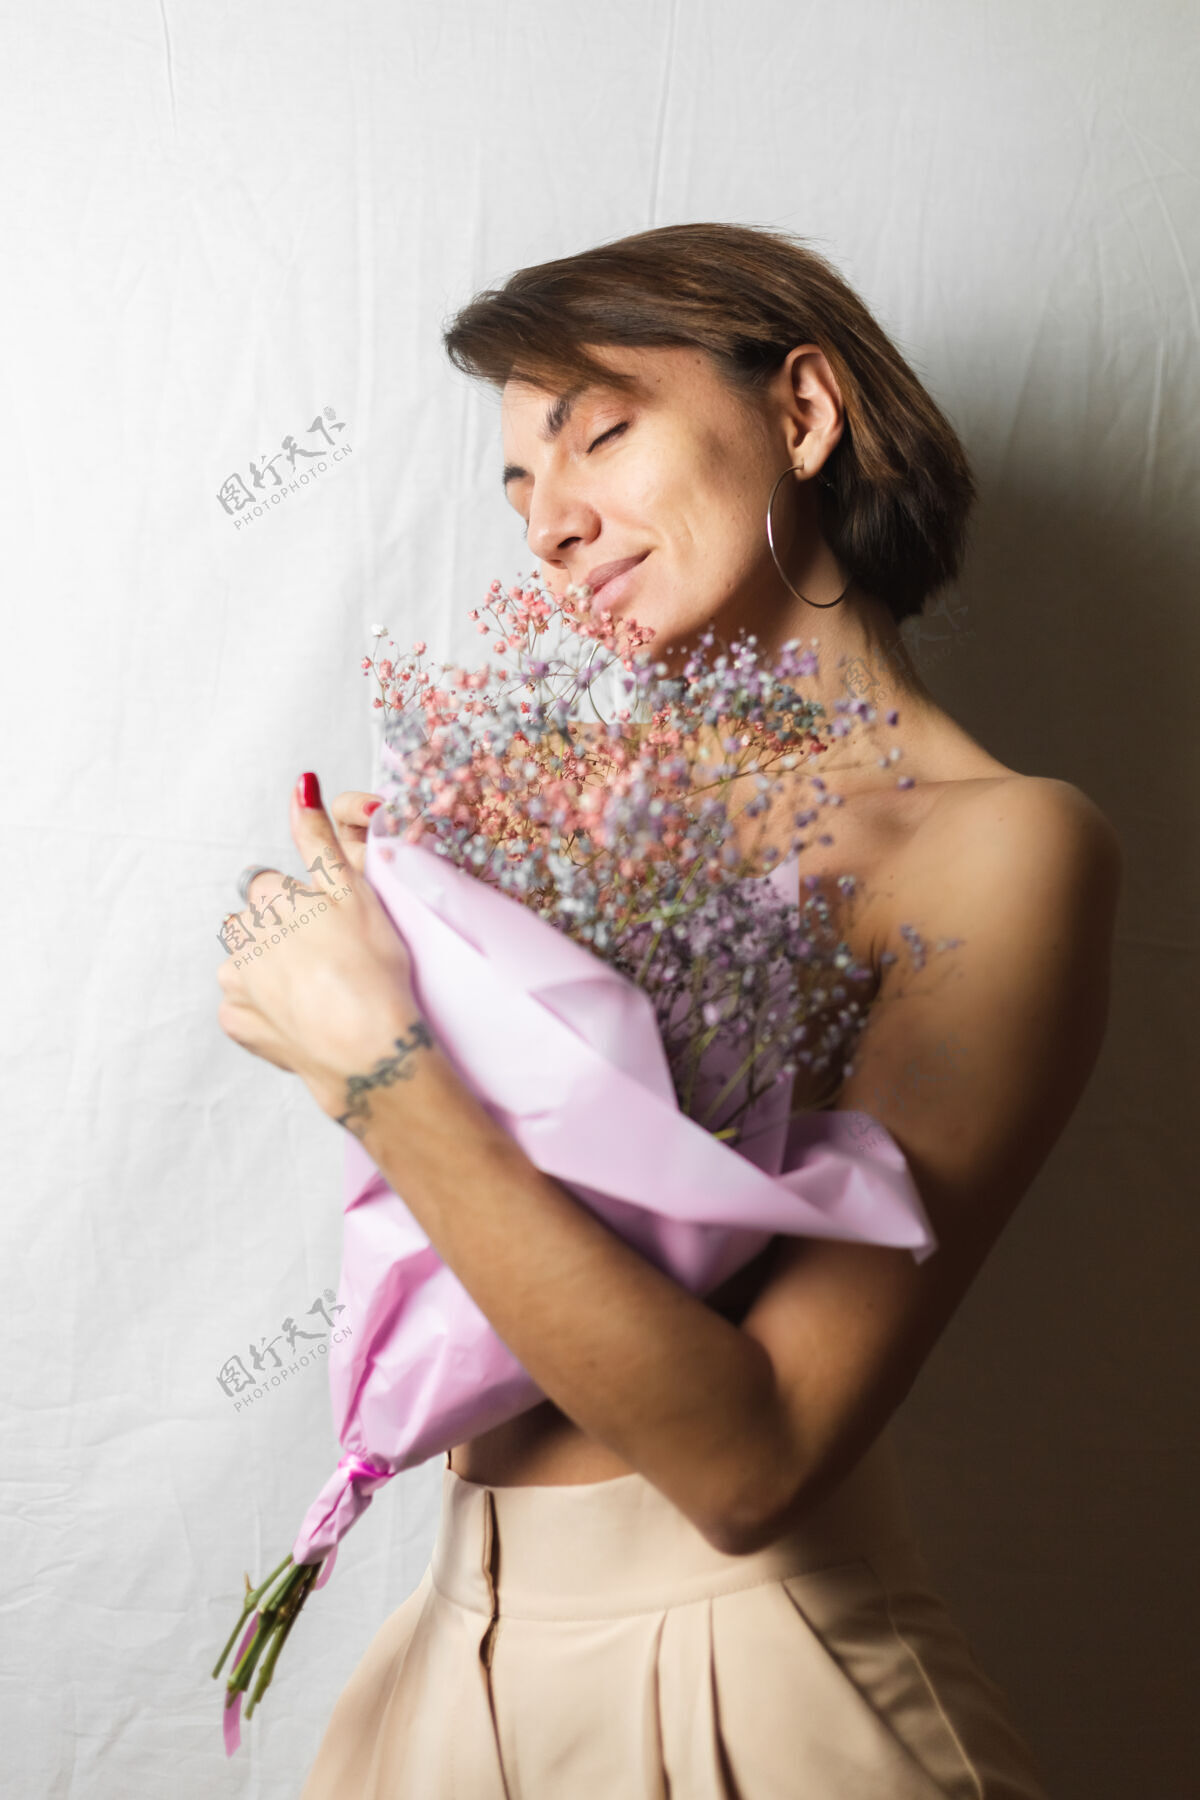 情感一位年轻女子的温柔写照 身穿白色抹布 赤裸上身 手持一束干枯多色的鲜花 微笑可爱 期待春天的到来社交植物花